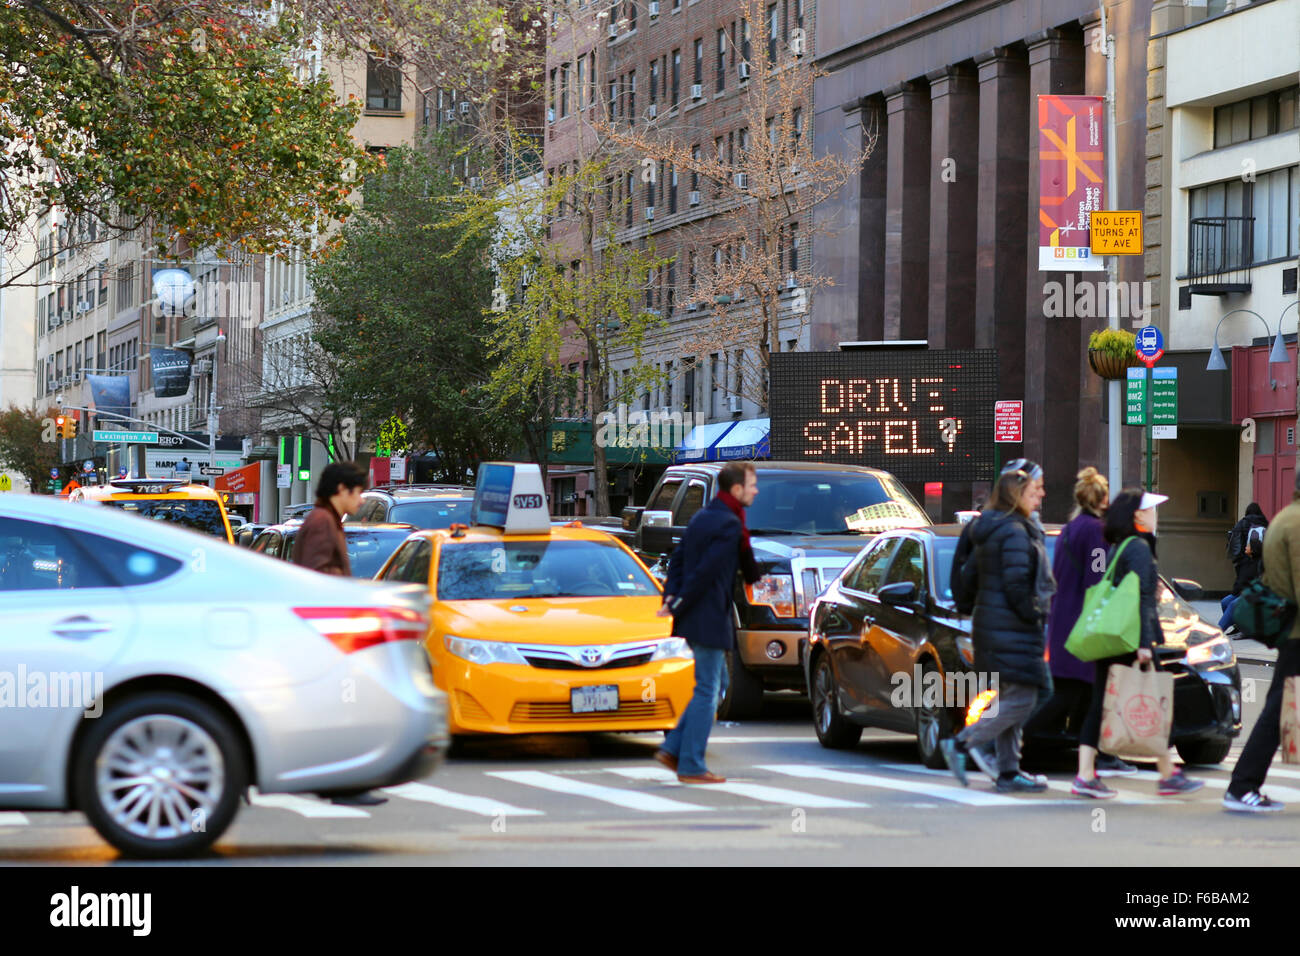 Un panneau électronique clignote conduisez prudemment près d'une intersection avec la ville de New York alors que les piétons traversent une rue à côté des voitures arrêtées dans le passage de côté. Banque D'Images